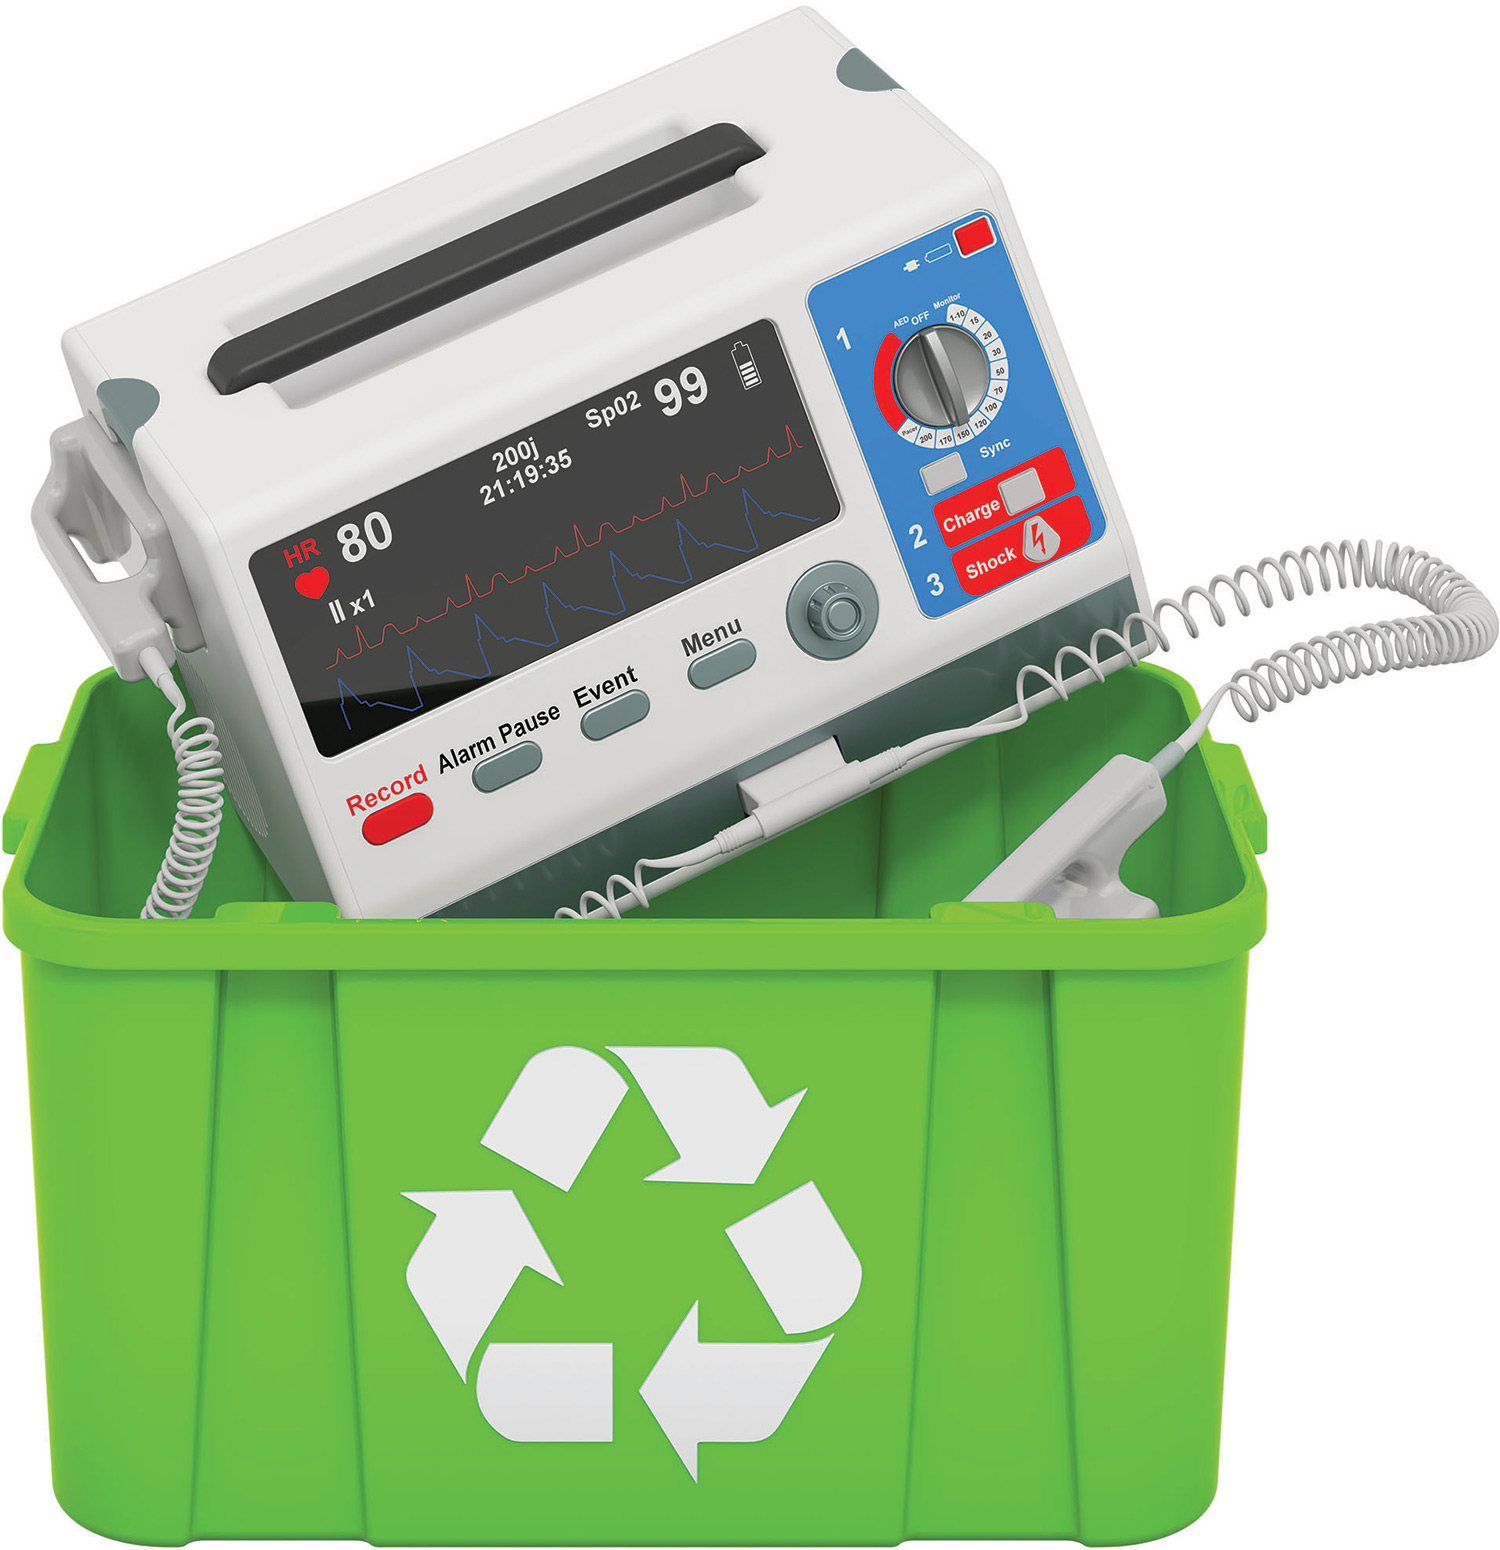 heart monitor in green recycle bin